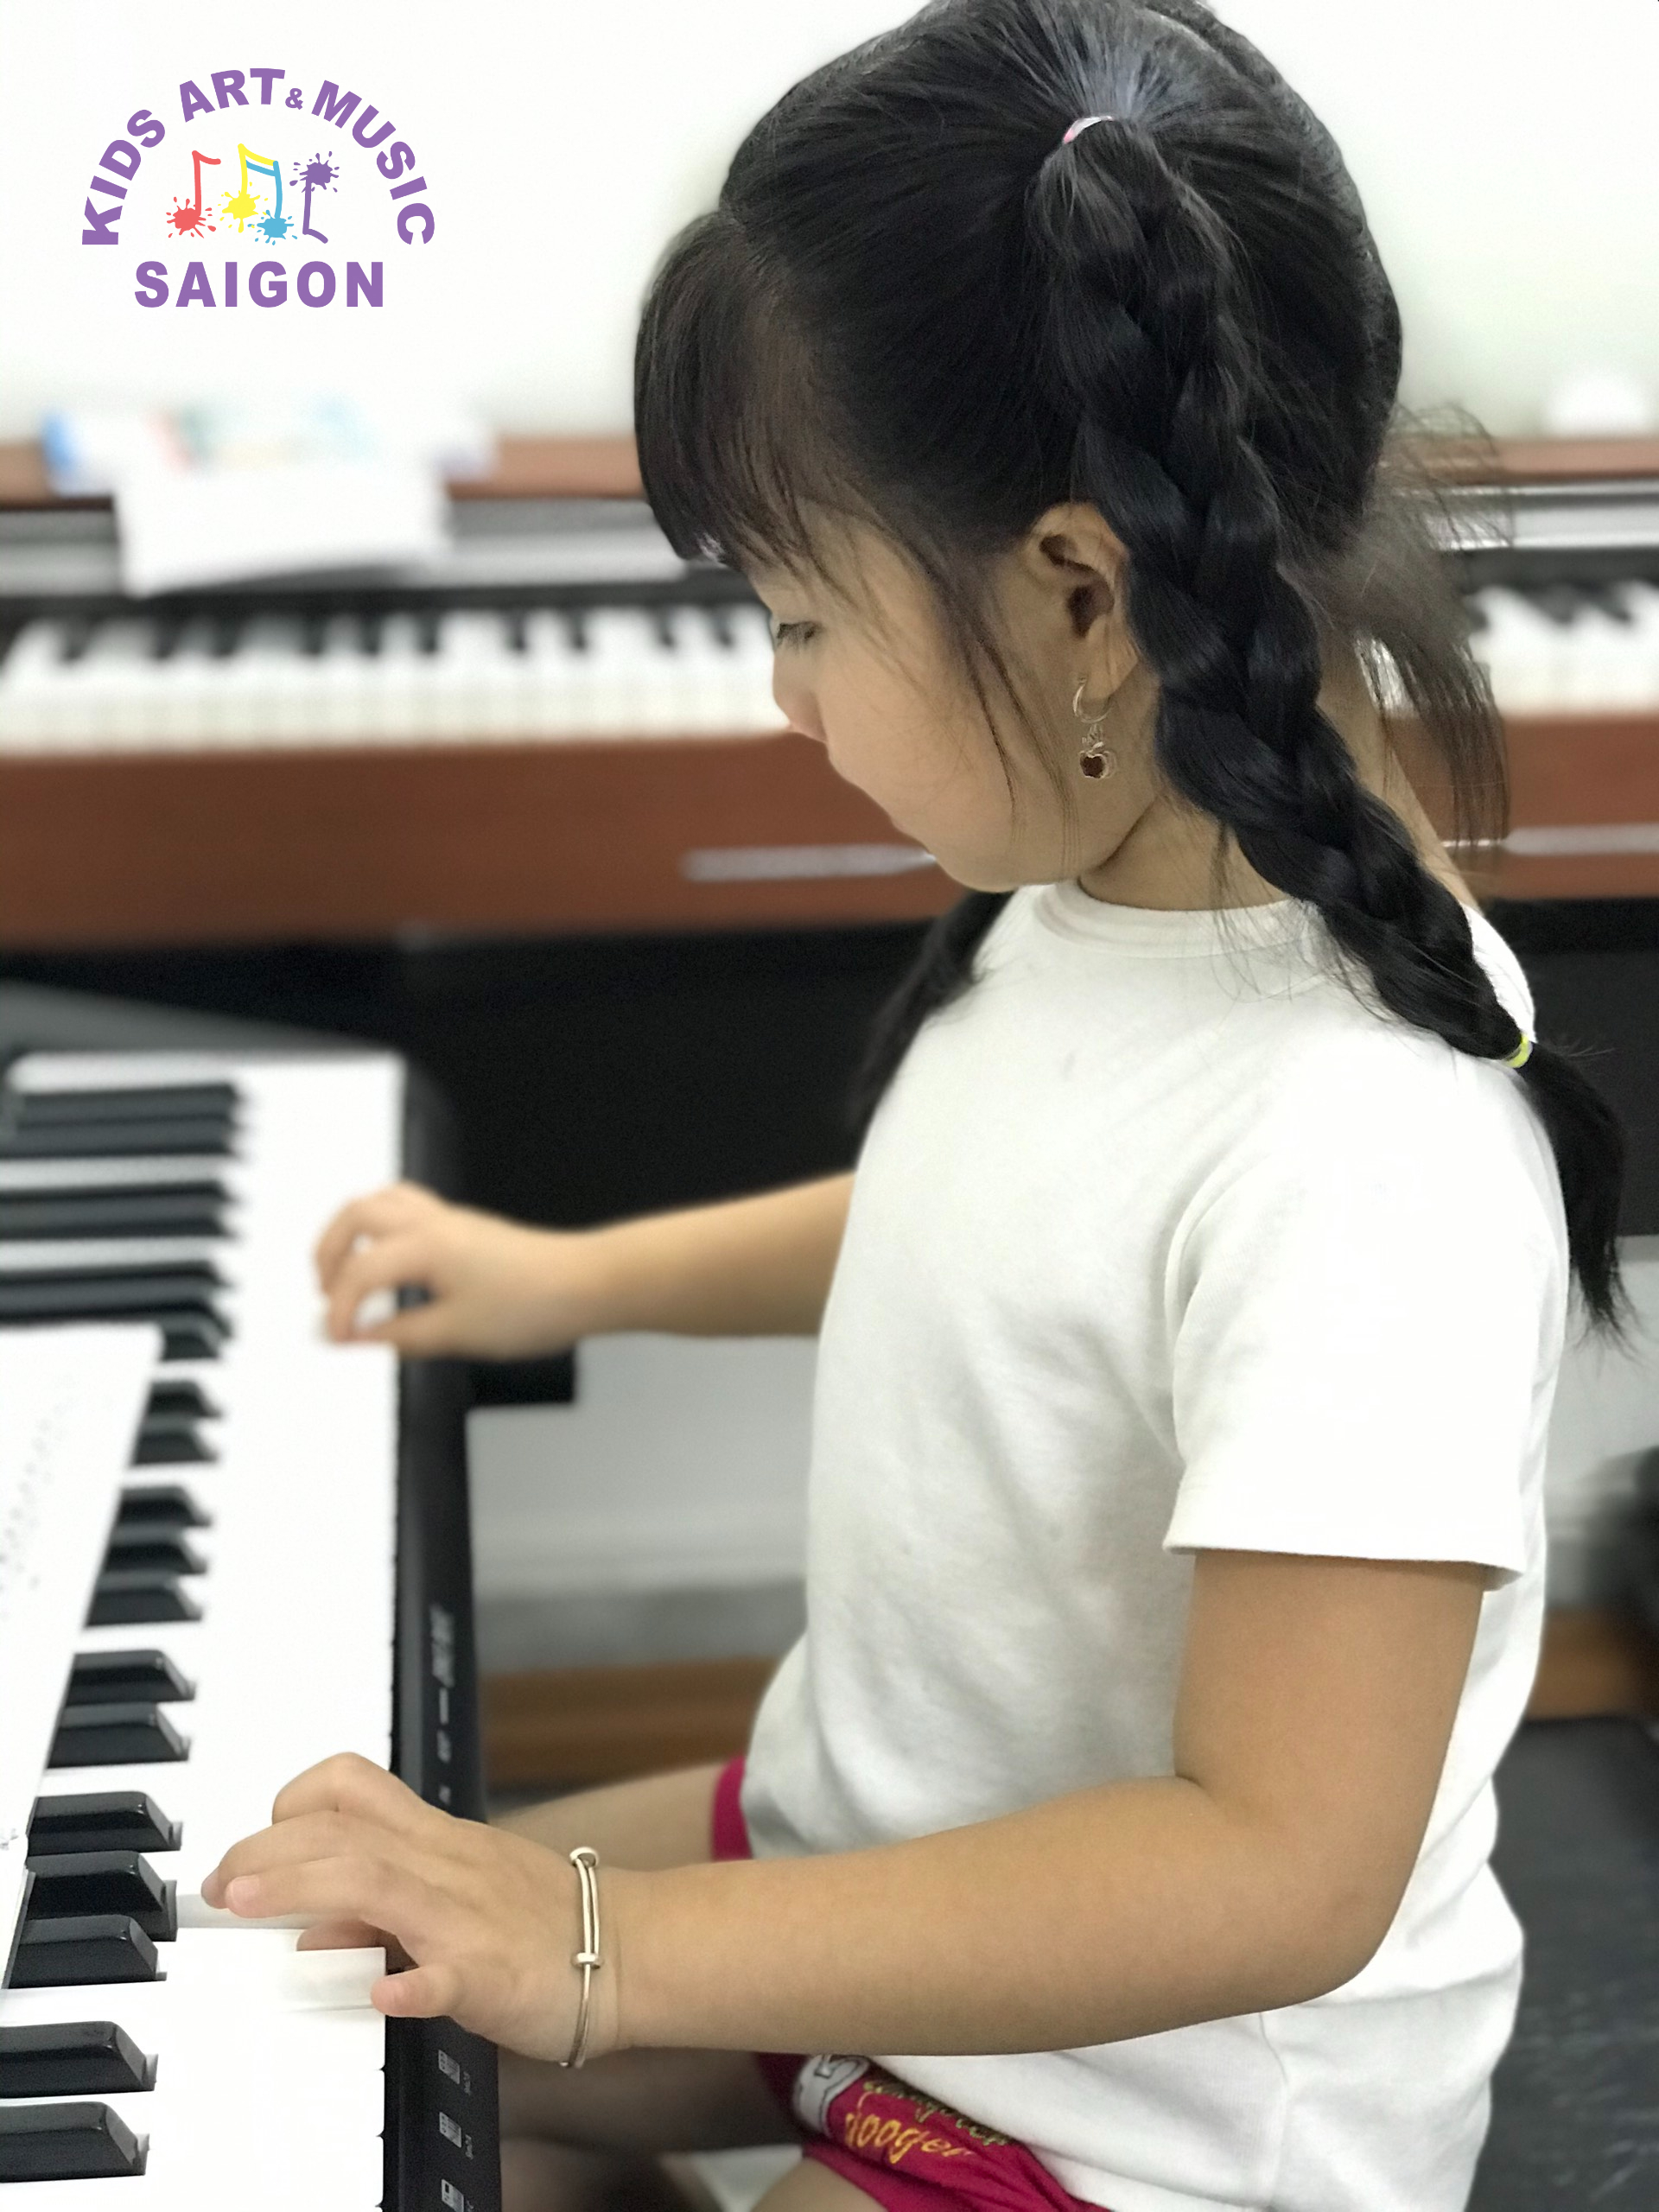 Trung tâm dạy học piano ở quận 10 cho bé uy tín - hình ảnh 1